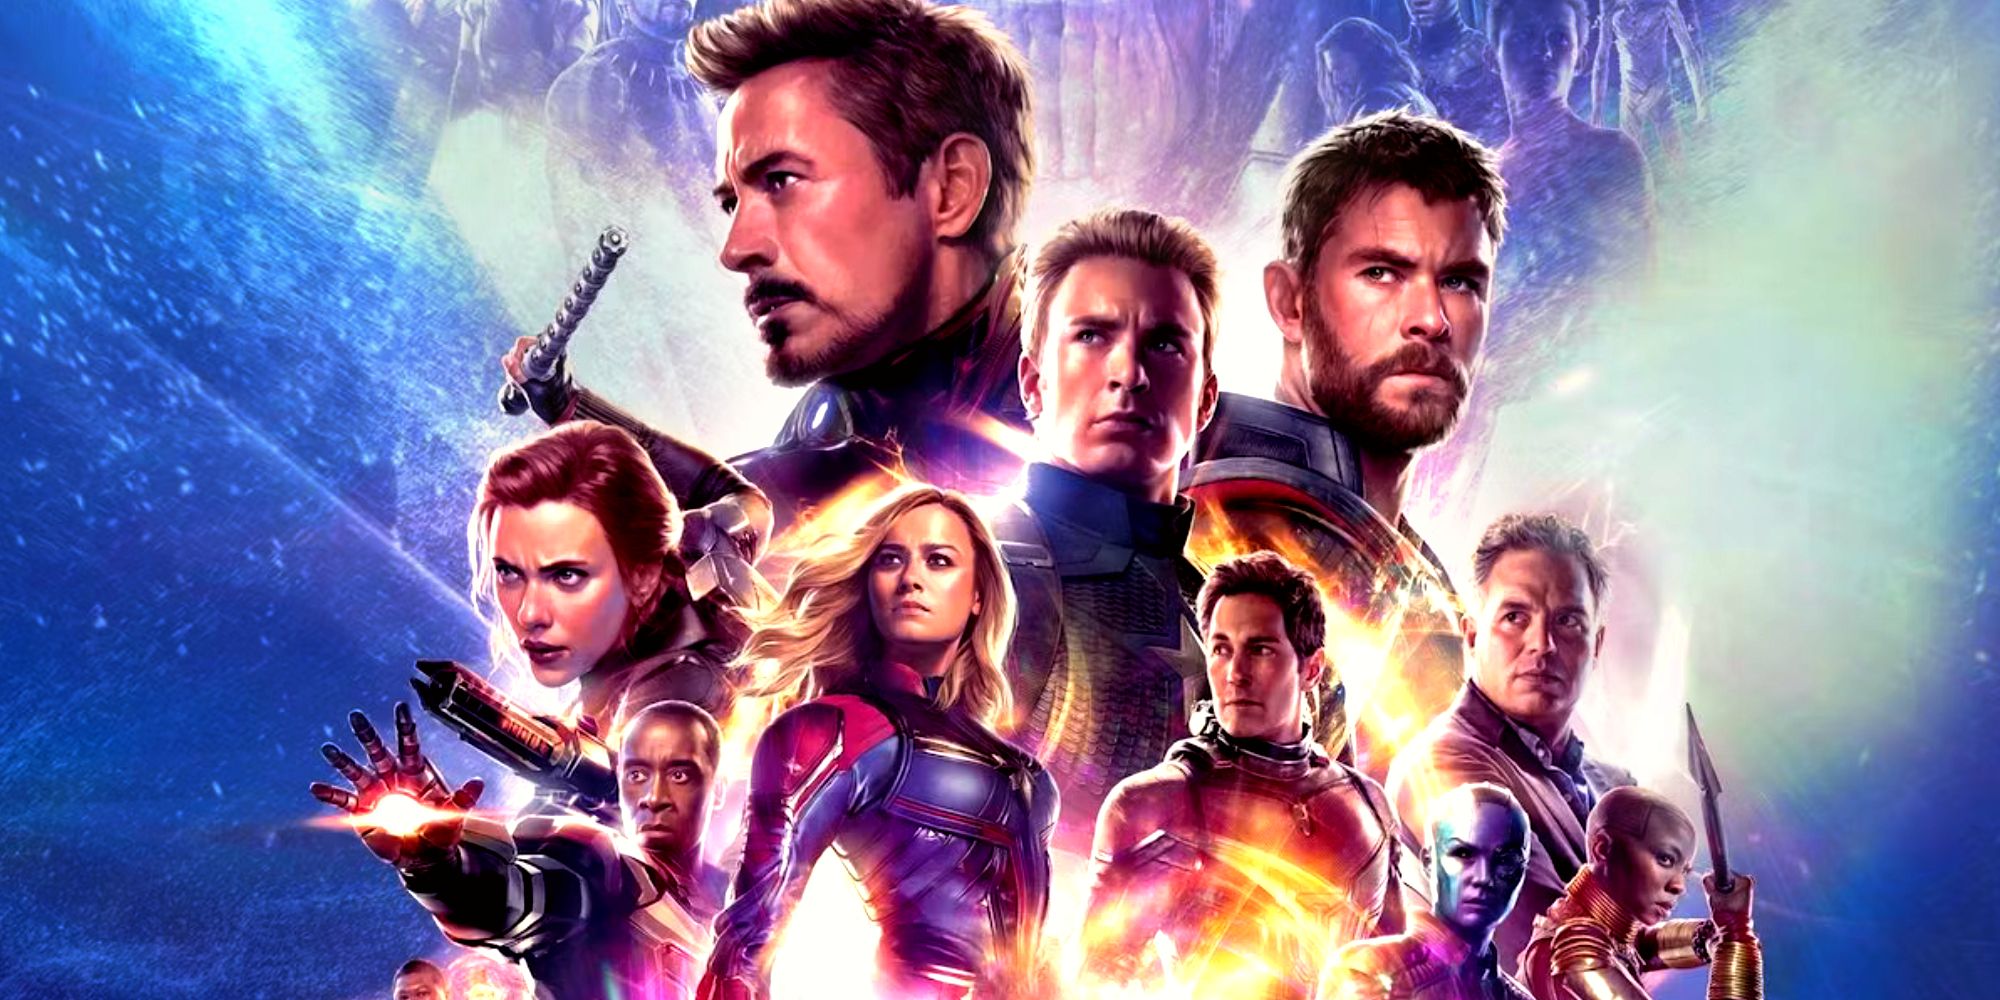 Avengers Endgame Full Team Movie Poster (Howard the Duck not featured)